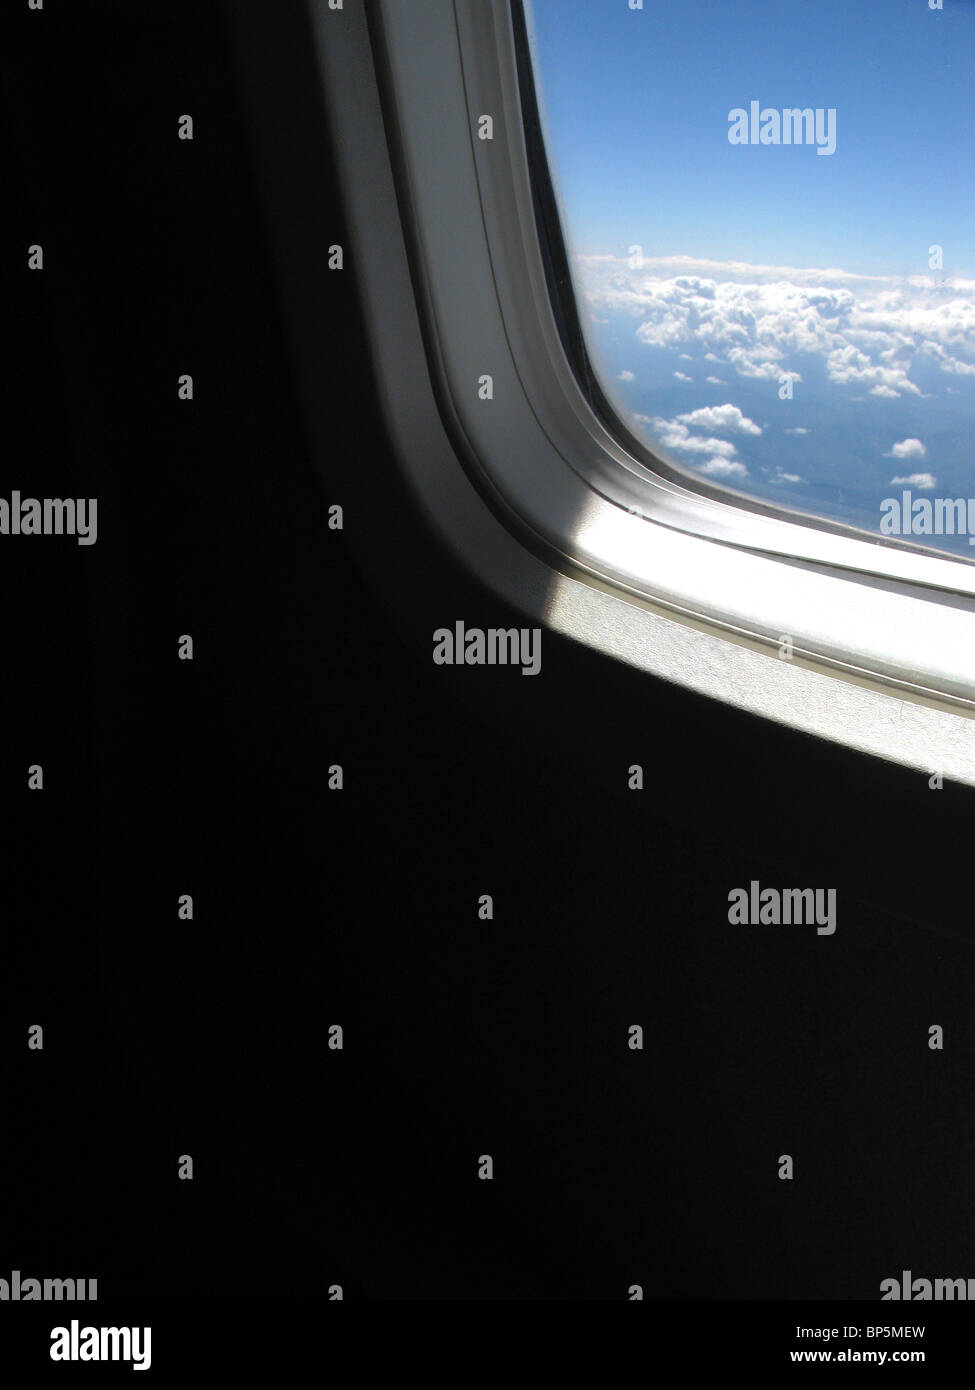 Ein Passagier Blick auf ein Flugzeug Fenster außerhalb Tageslicht mit blauen Himmel und Wolken Stockfoto